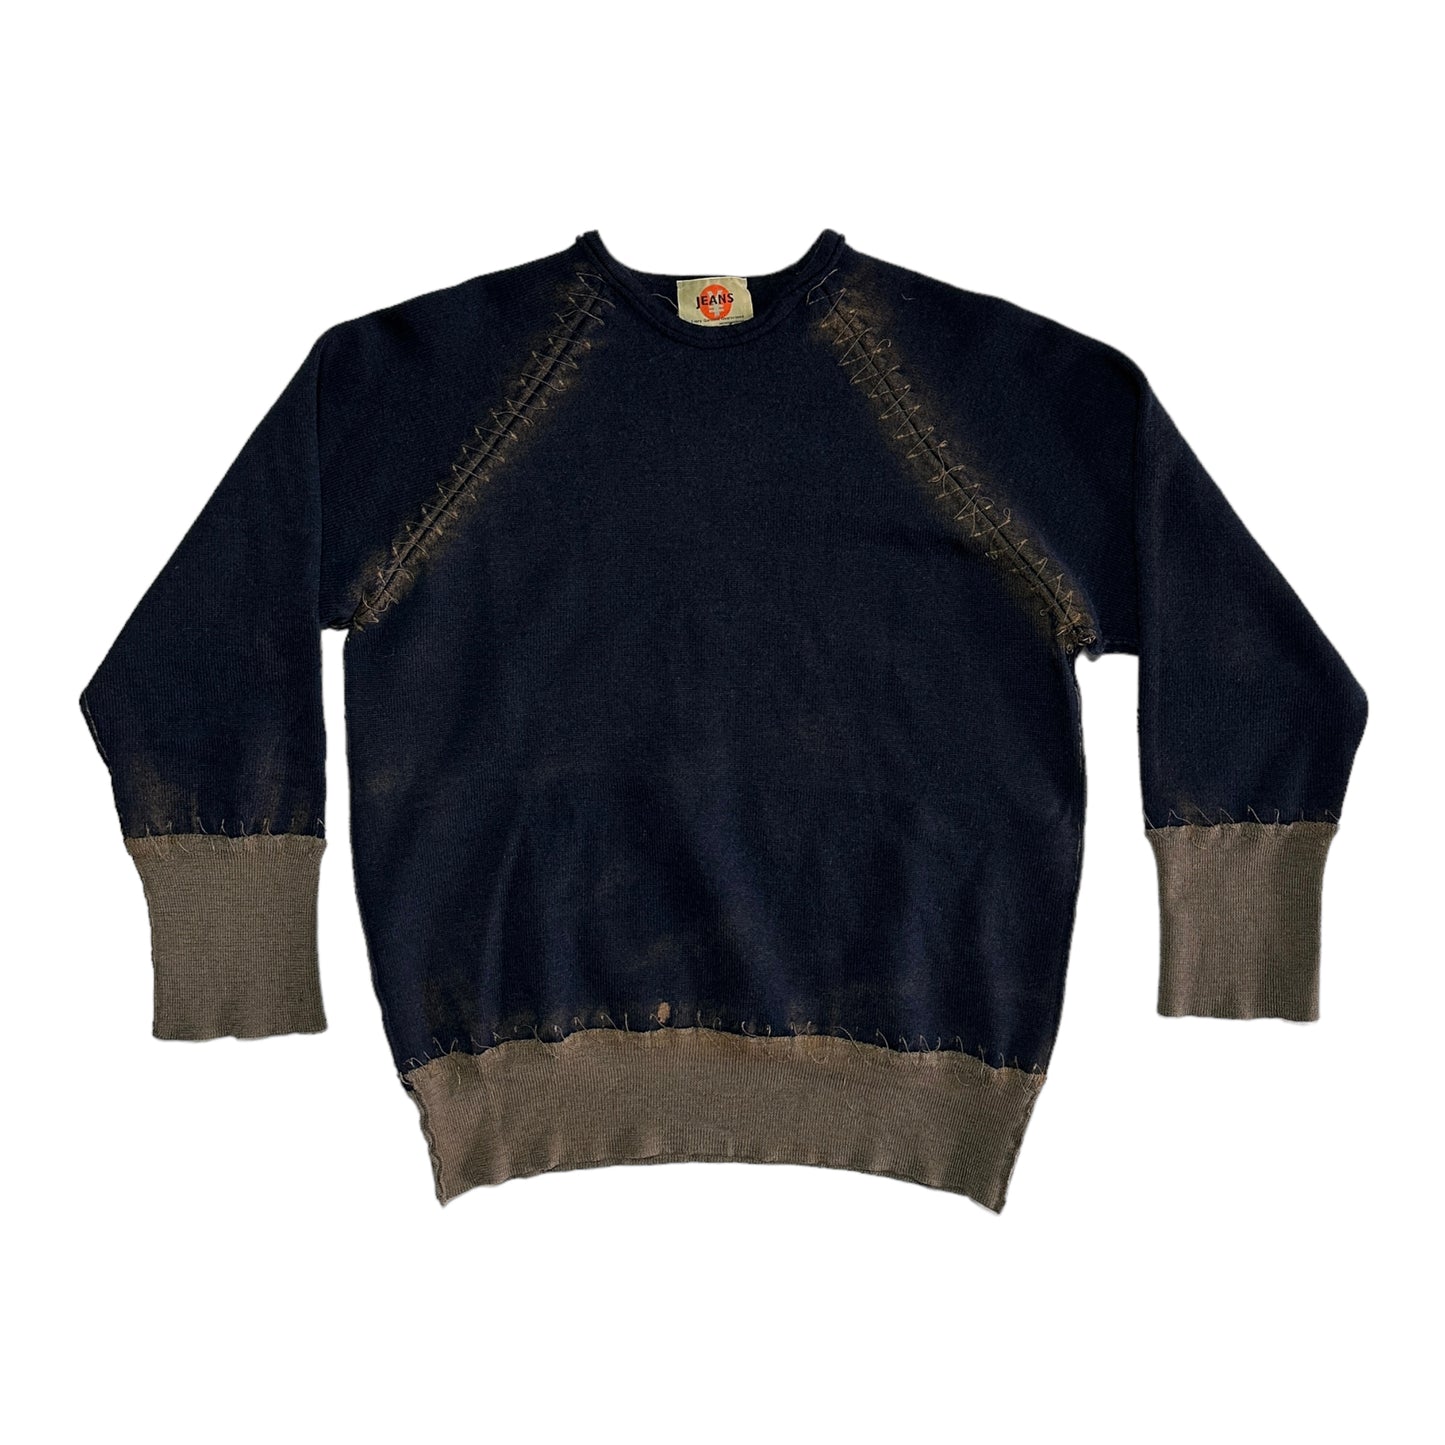 00's Michiko Koshino Wool Sweater (S)